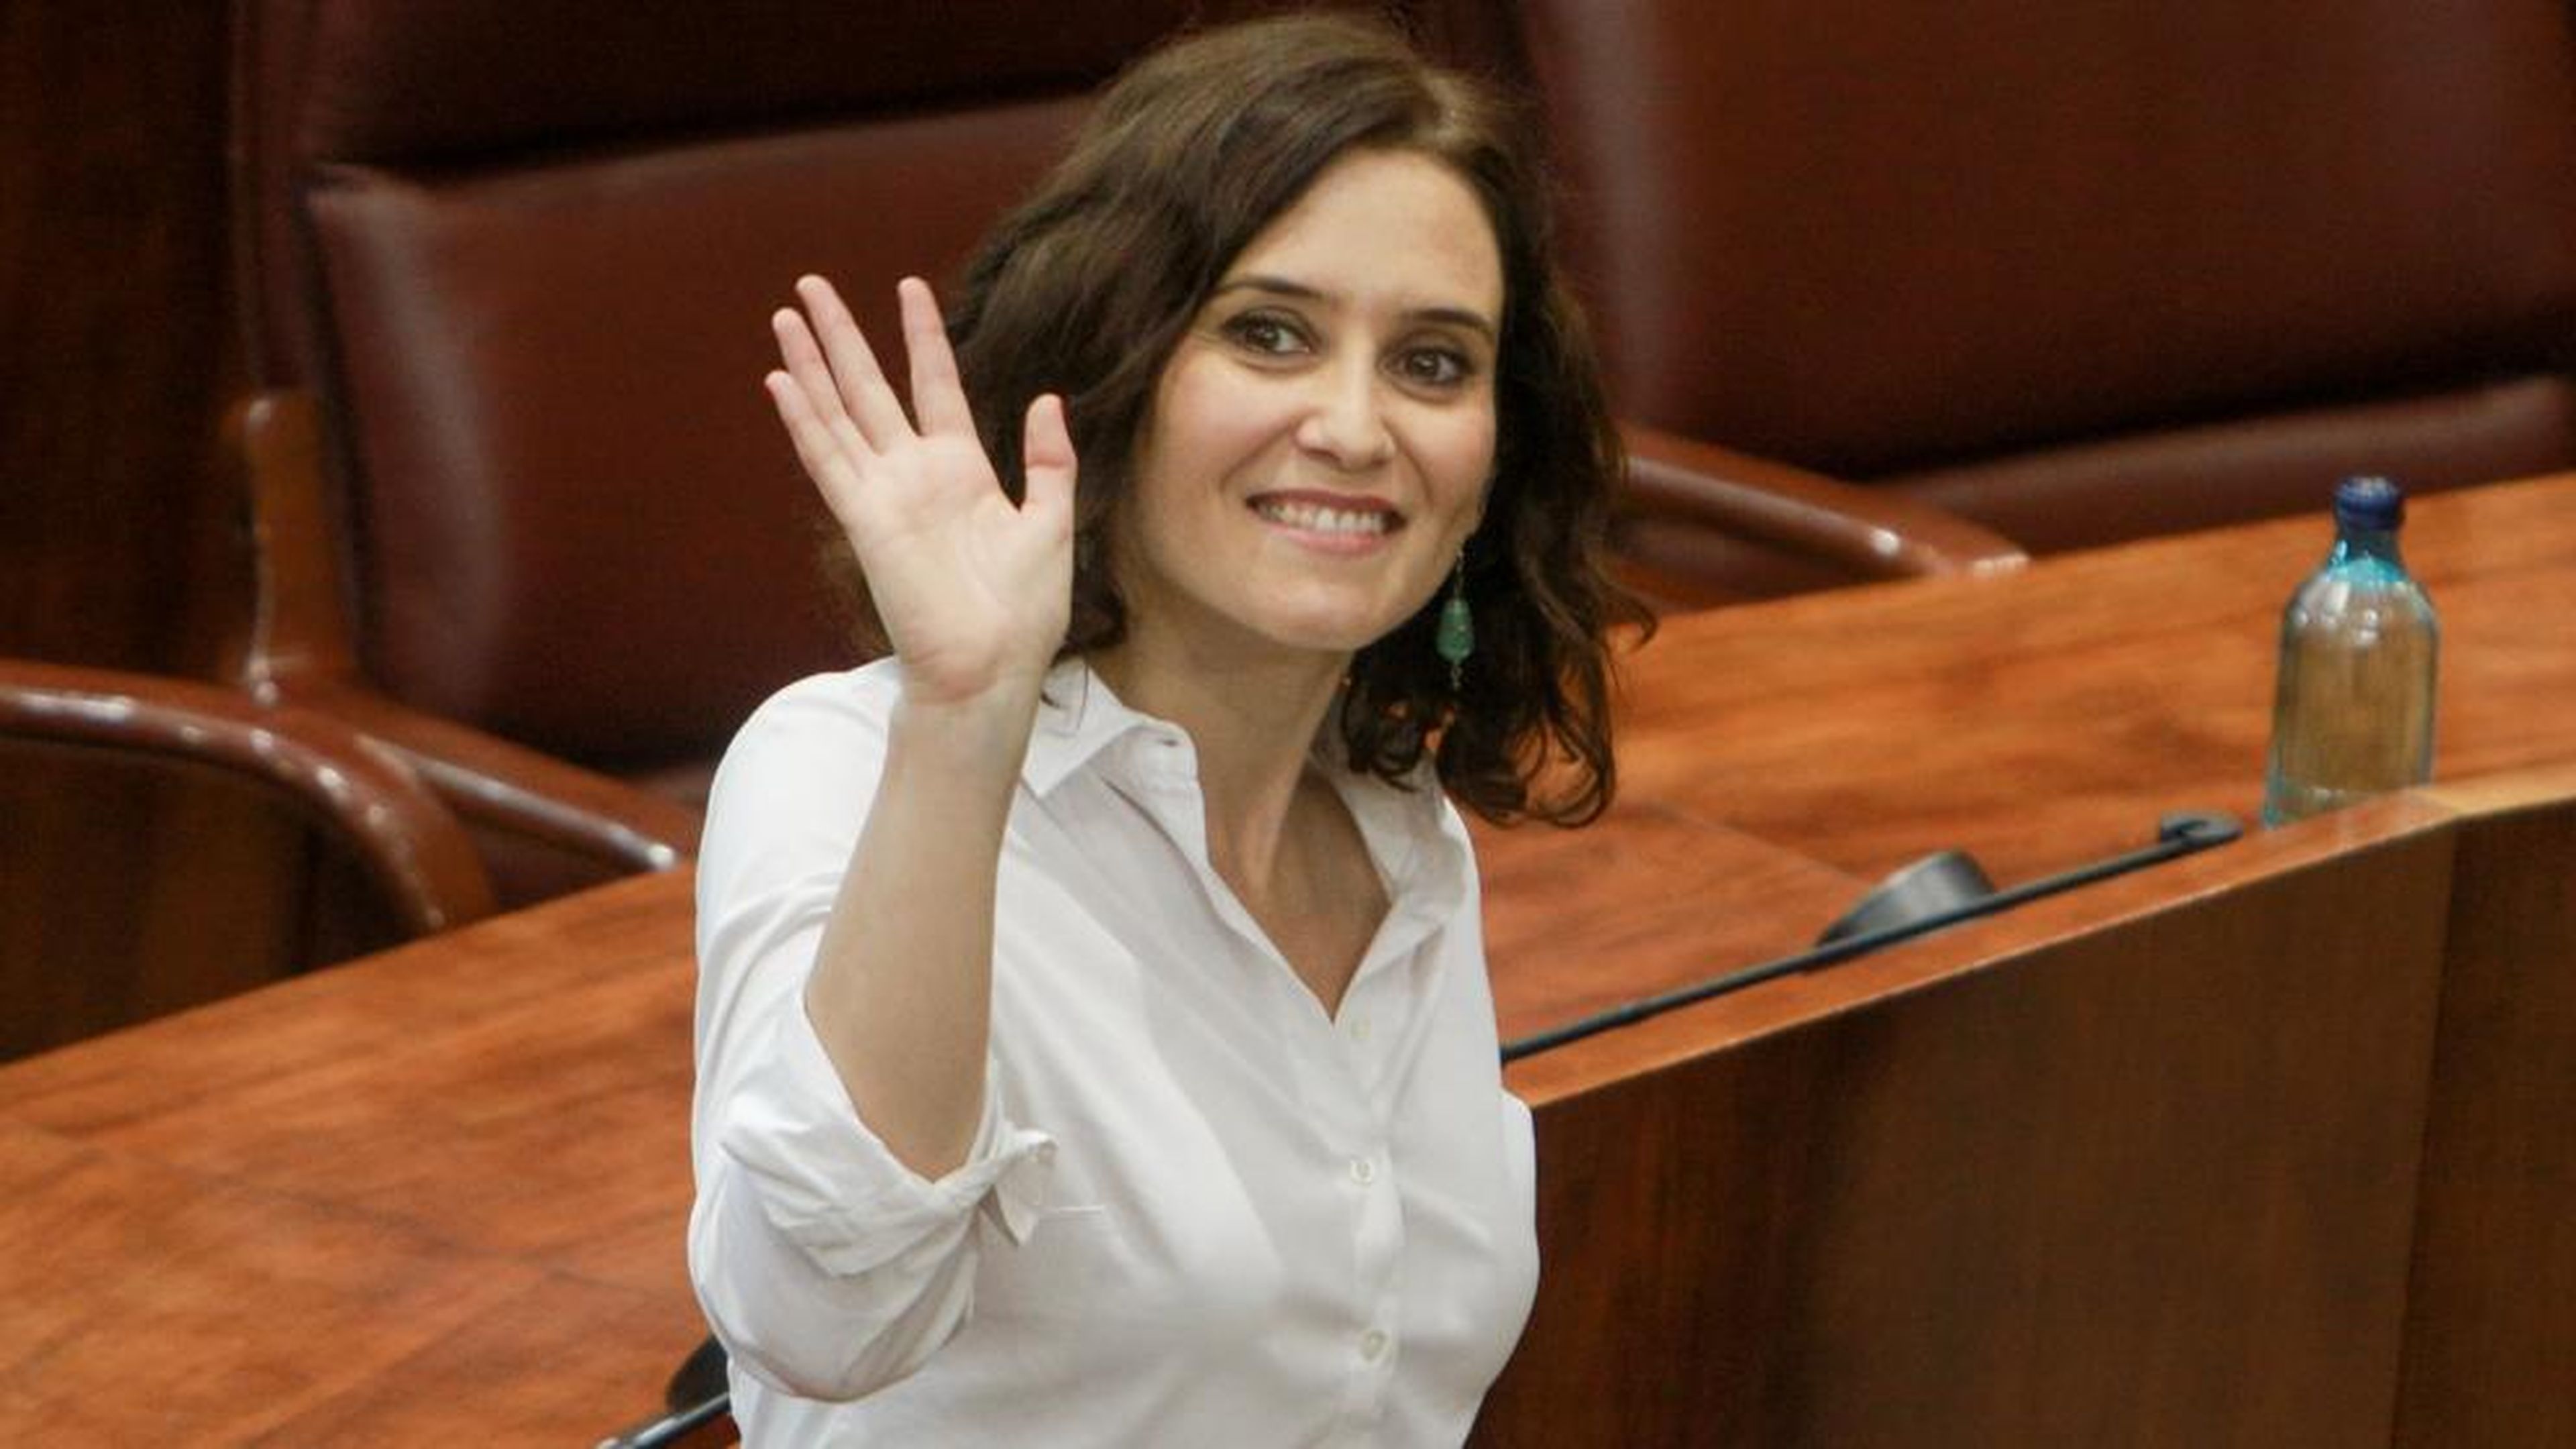 La presidenta de la Comunidad de Madrid, Isabel Díaz-Ayuso.